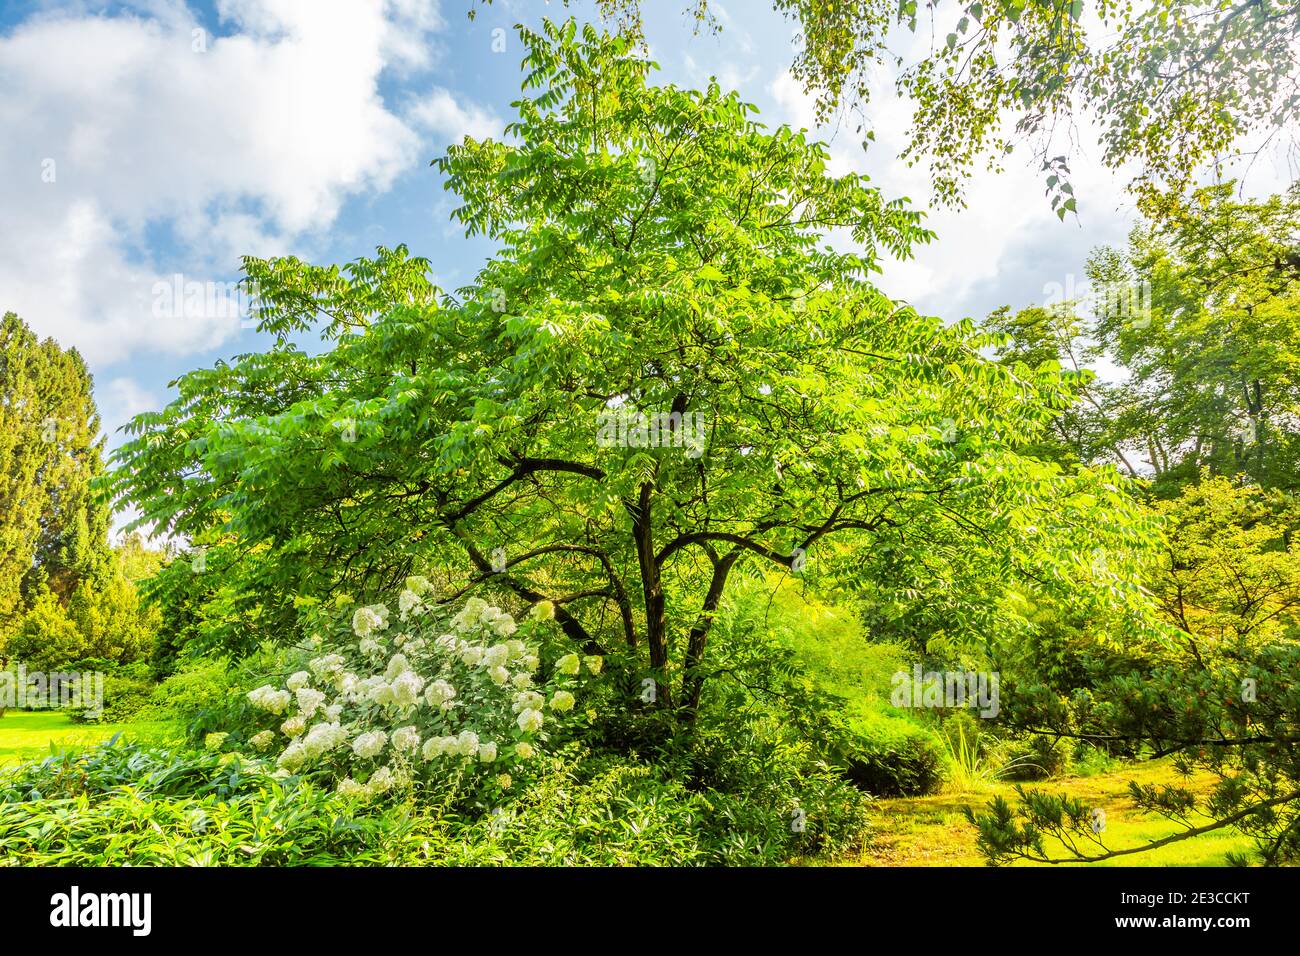 Grauer Walnussbaum, Juglans cinerea, mit im Vordergrund eine blühende Hortensia paniculata Limelight mit grünen cremeweißen Blüten Stockfoto